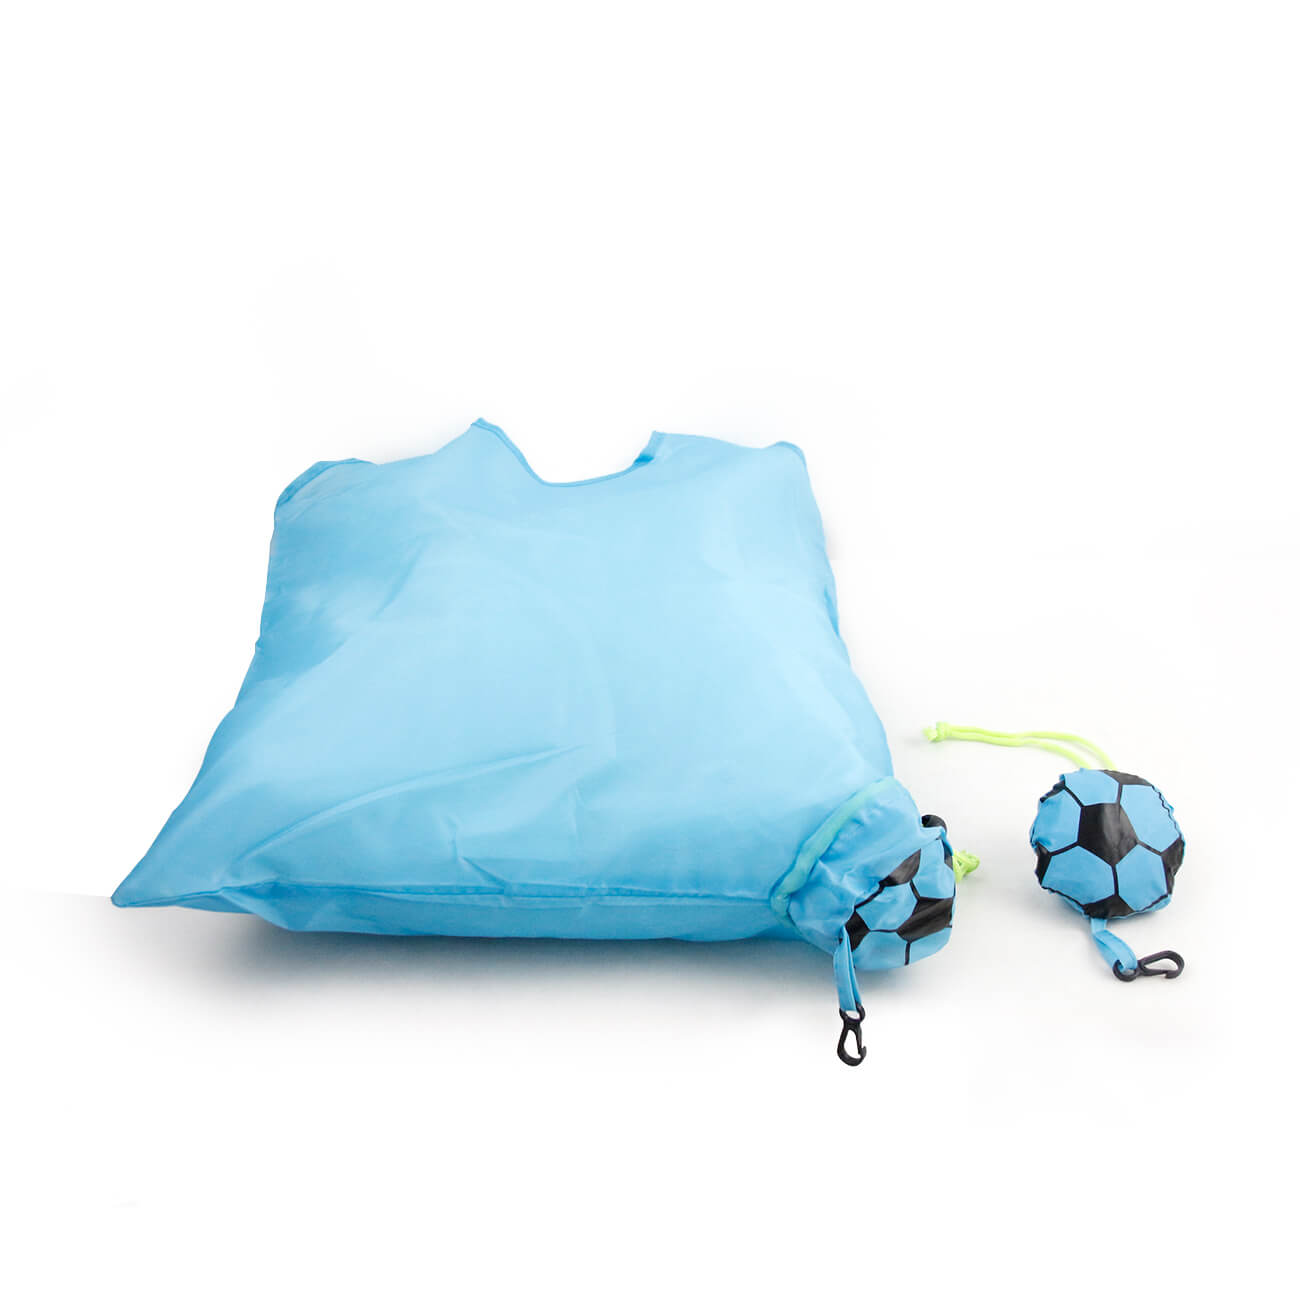 Foldableフットボールのショッピング・バッグ